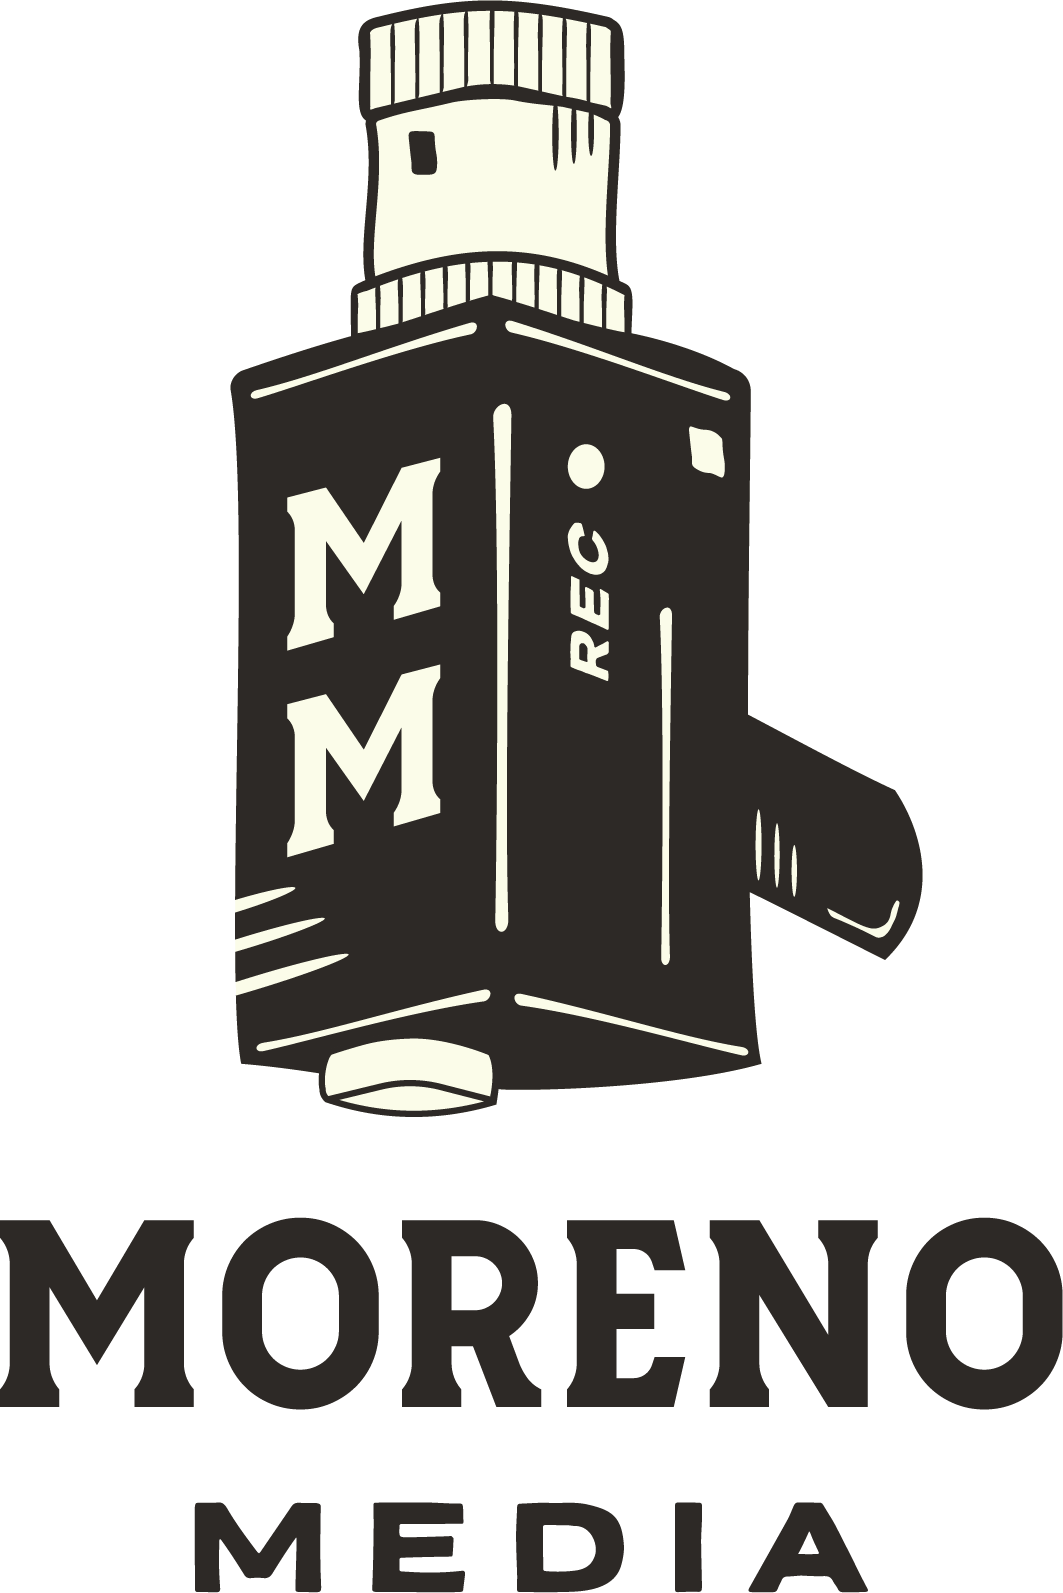 Moreno Media